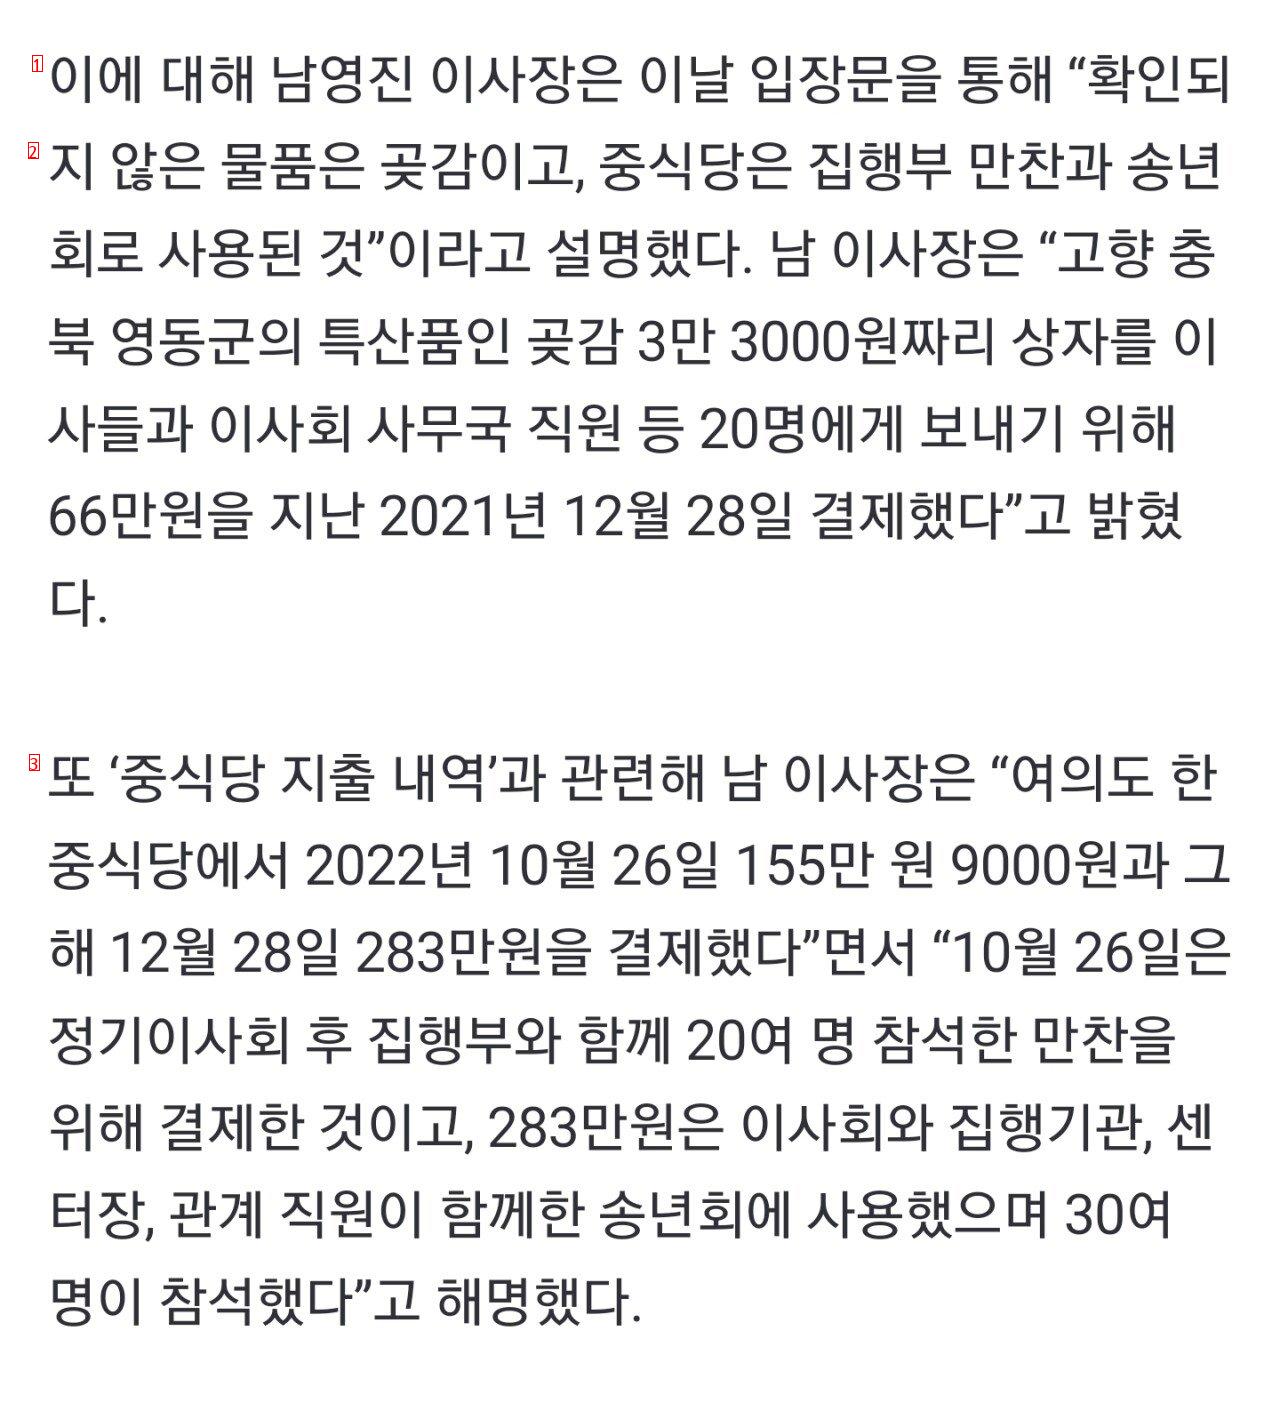 밥 한끼에 150~300만원 의혹, KBS 이사장 논란...jpg